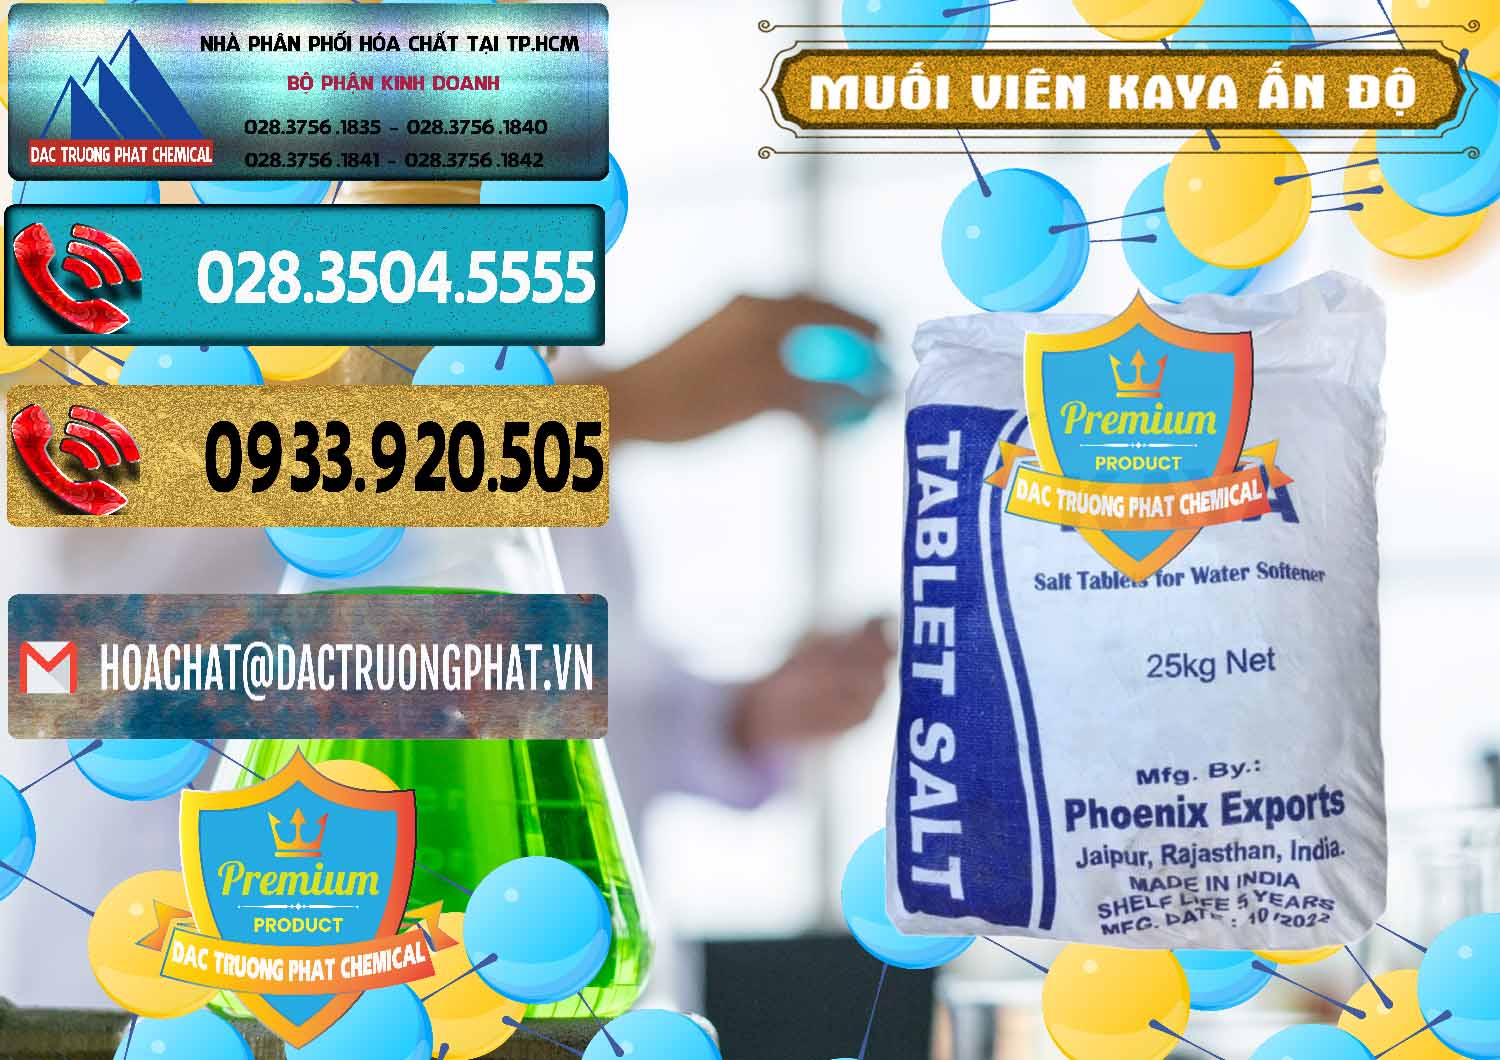 Công ty chuyên phân phối _ bán Muối NaCL – Sodium Chloride Dạng Viên Tablets Kaya Ấn Độ India - 0368 - Nhà cung cấp và phân phối hóa chất tại TP.HCM - hoachatdetnhuom.com